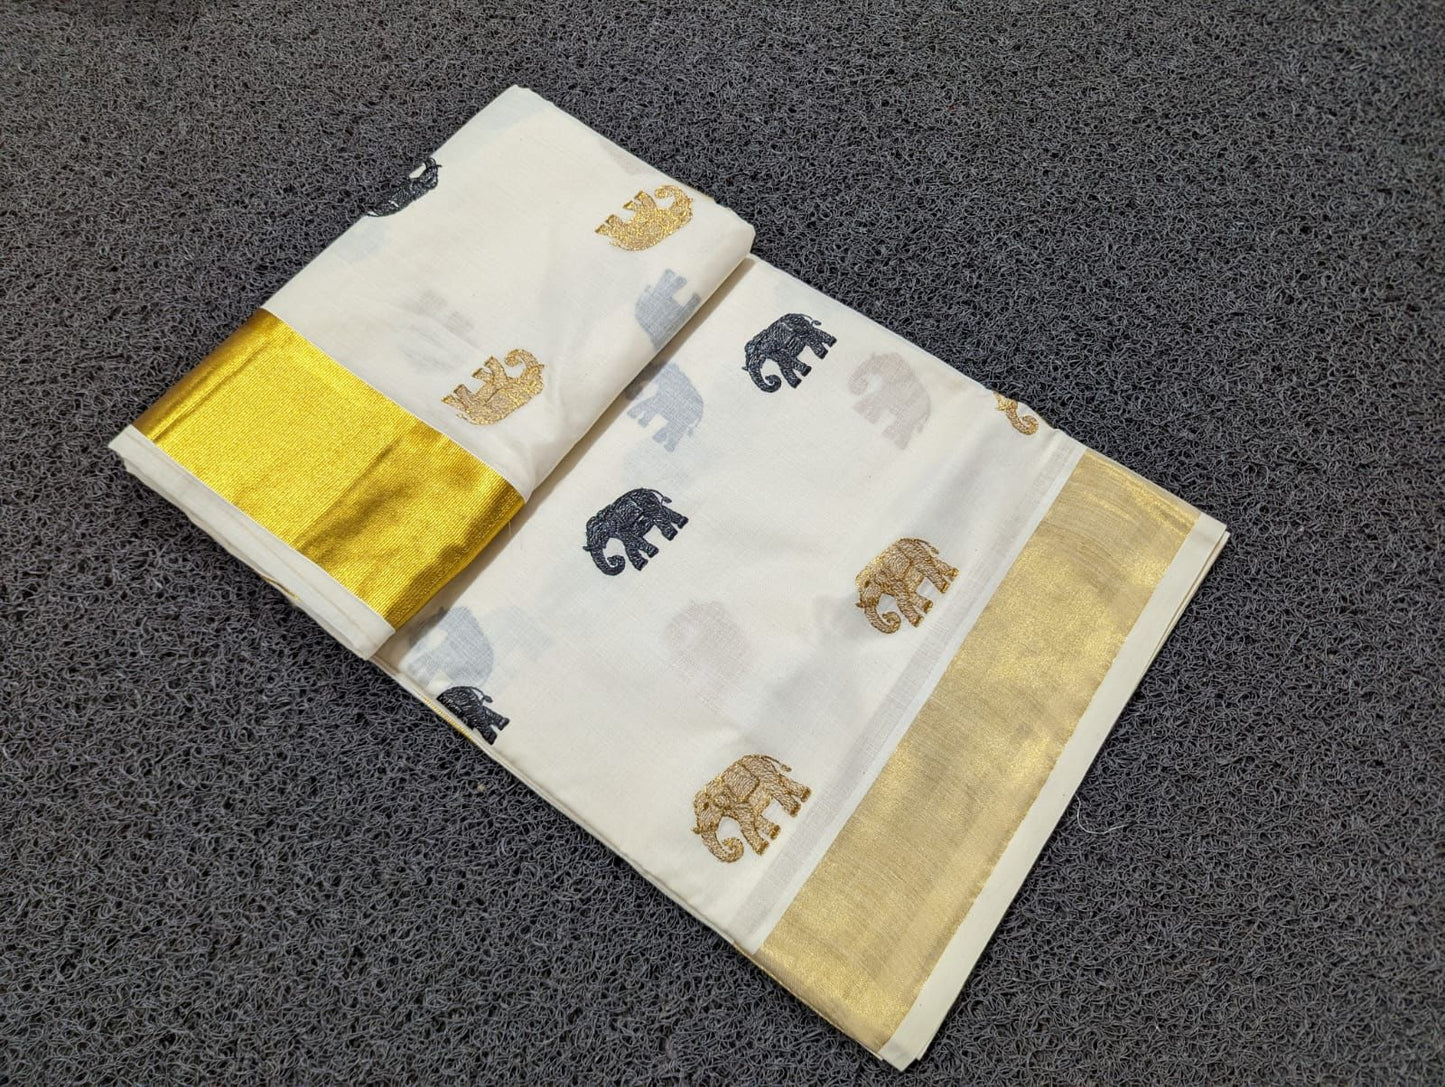 Kerala Cotton Kasavu Saree with Elephant Embroidery Works